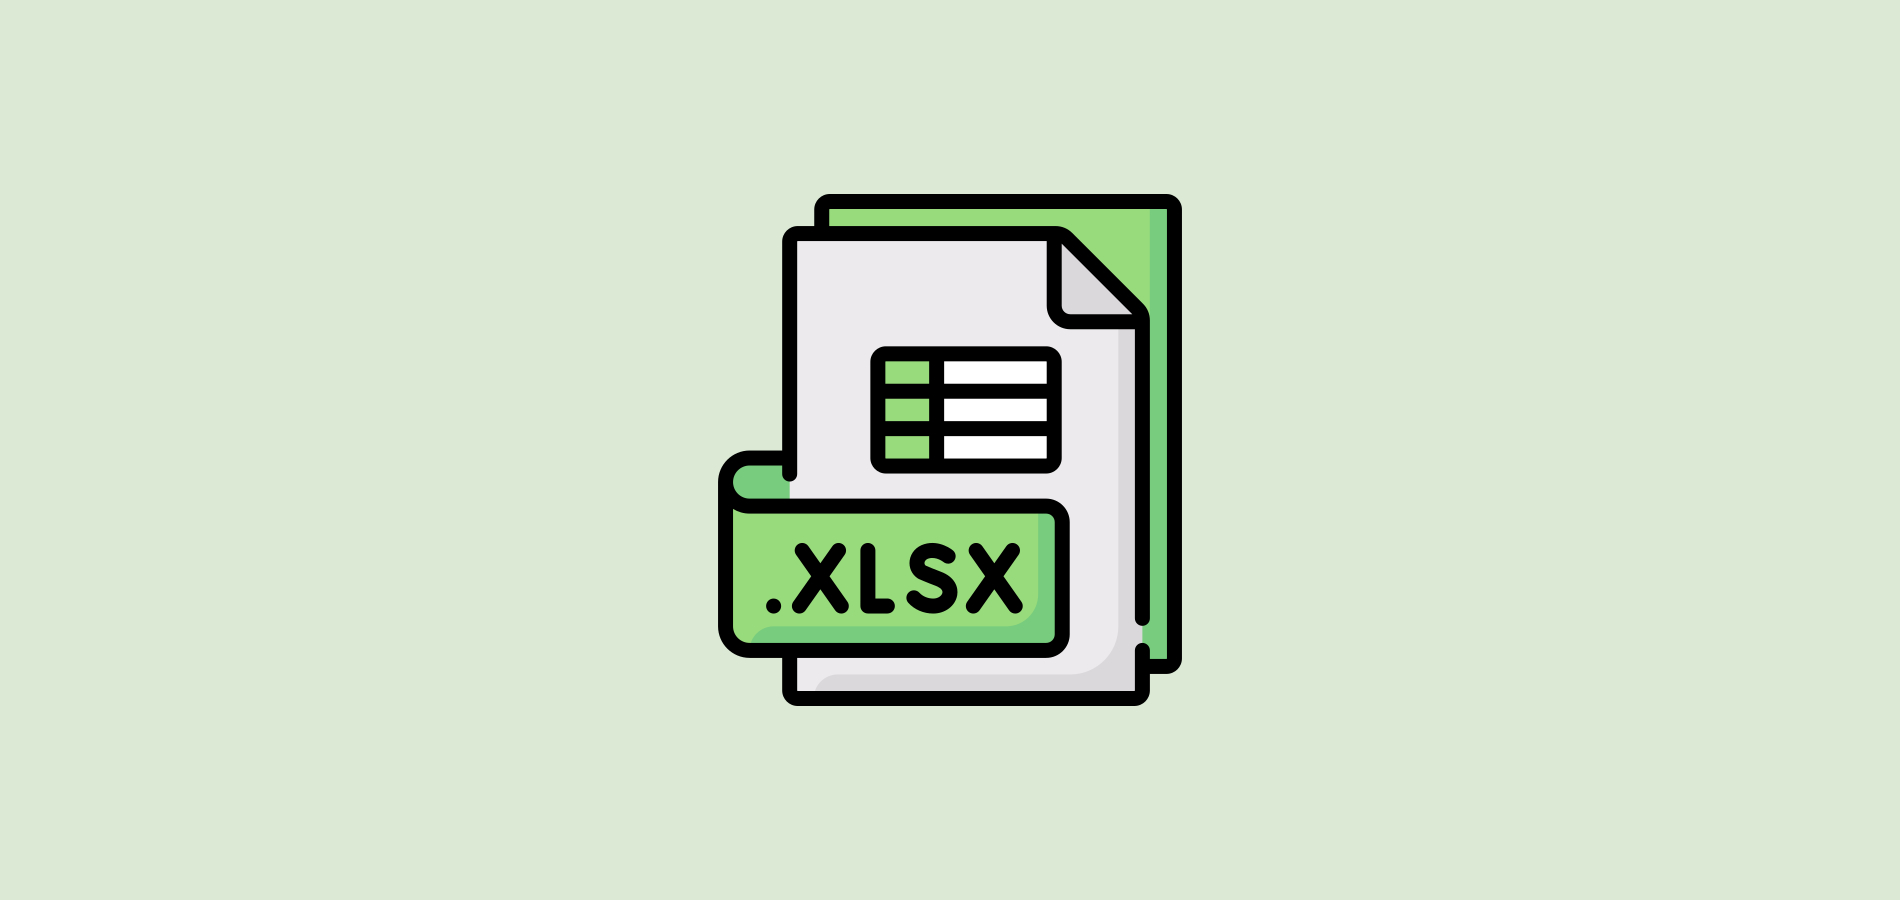 Convert XLSX to XLS